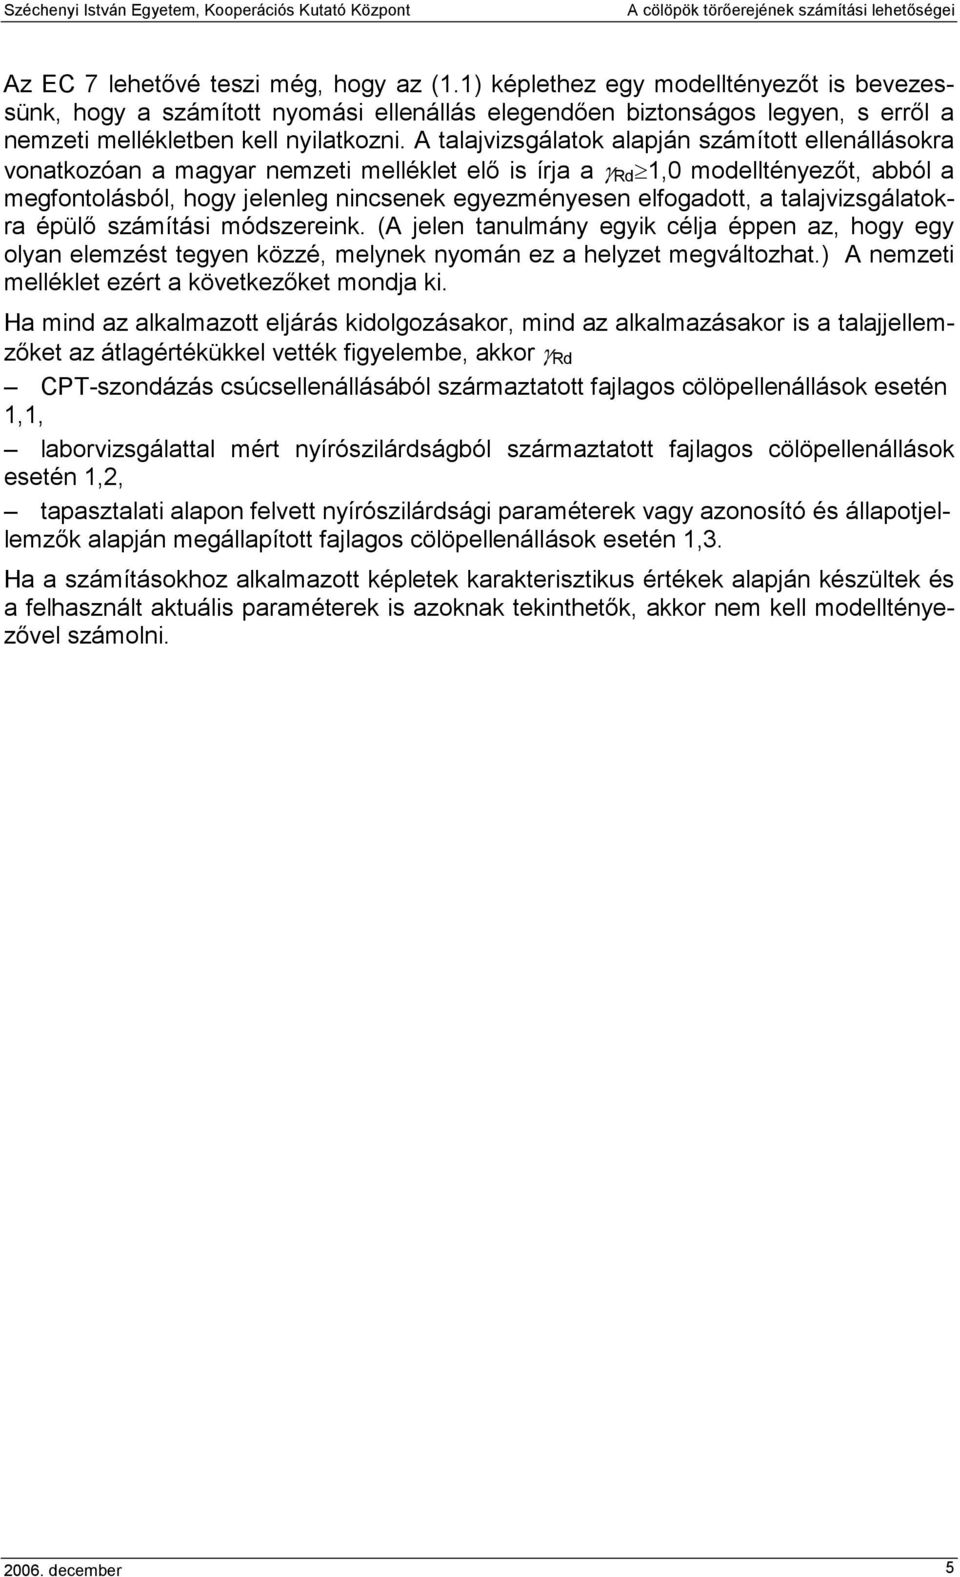 A talajvizsgálatok alapján számított ellenállásokra vonatkozóan a magyar nemzeti melléklet elı is írja a γ Rd 1,0 modelltényezıt, abból a megfontolásból, hogy jelenleg nincsenek egyezményesen